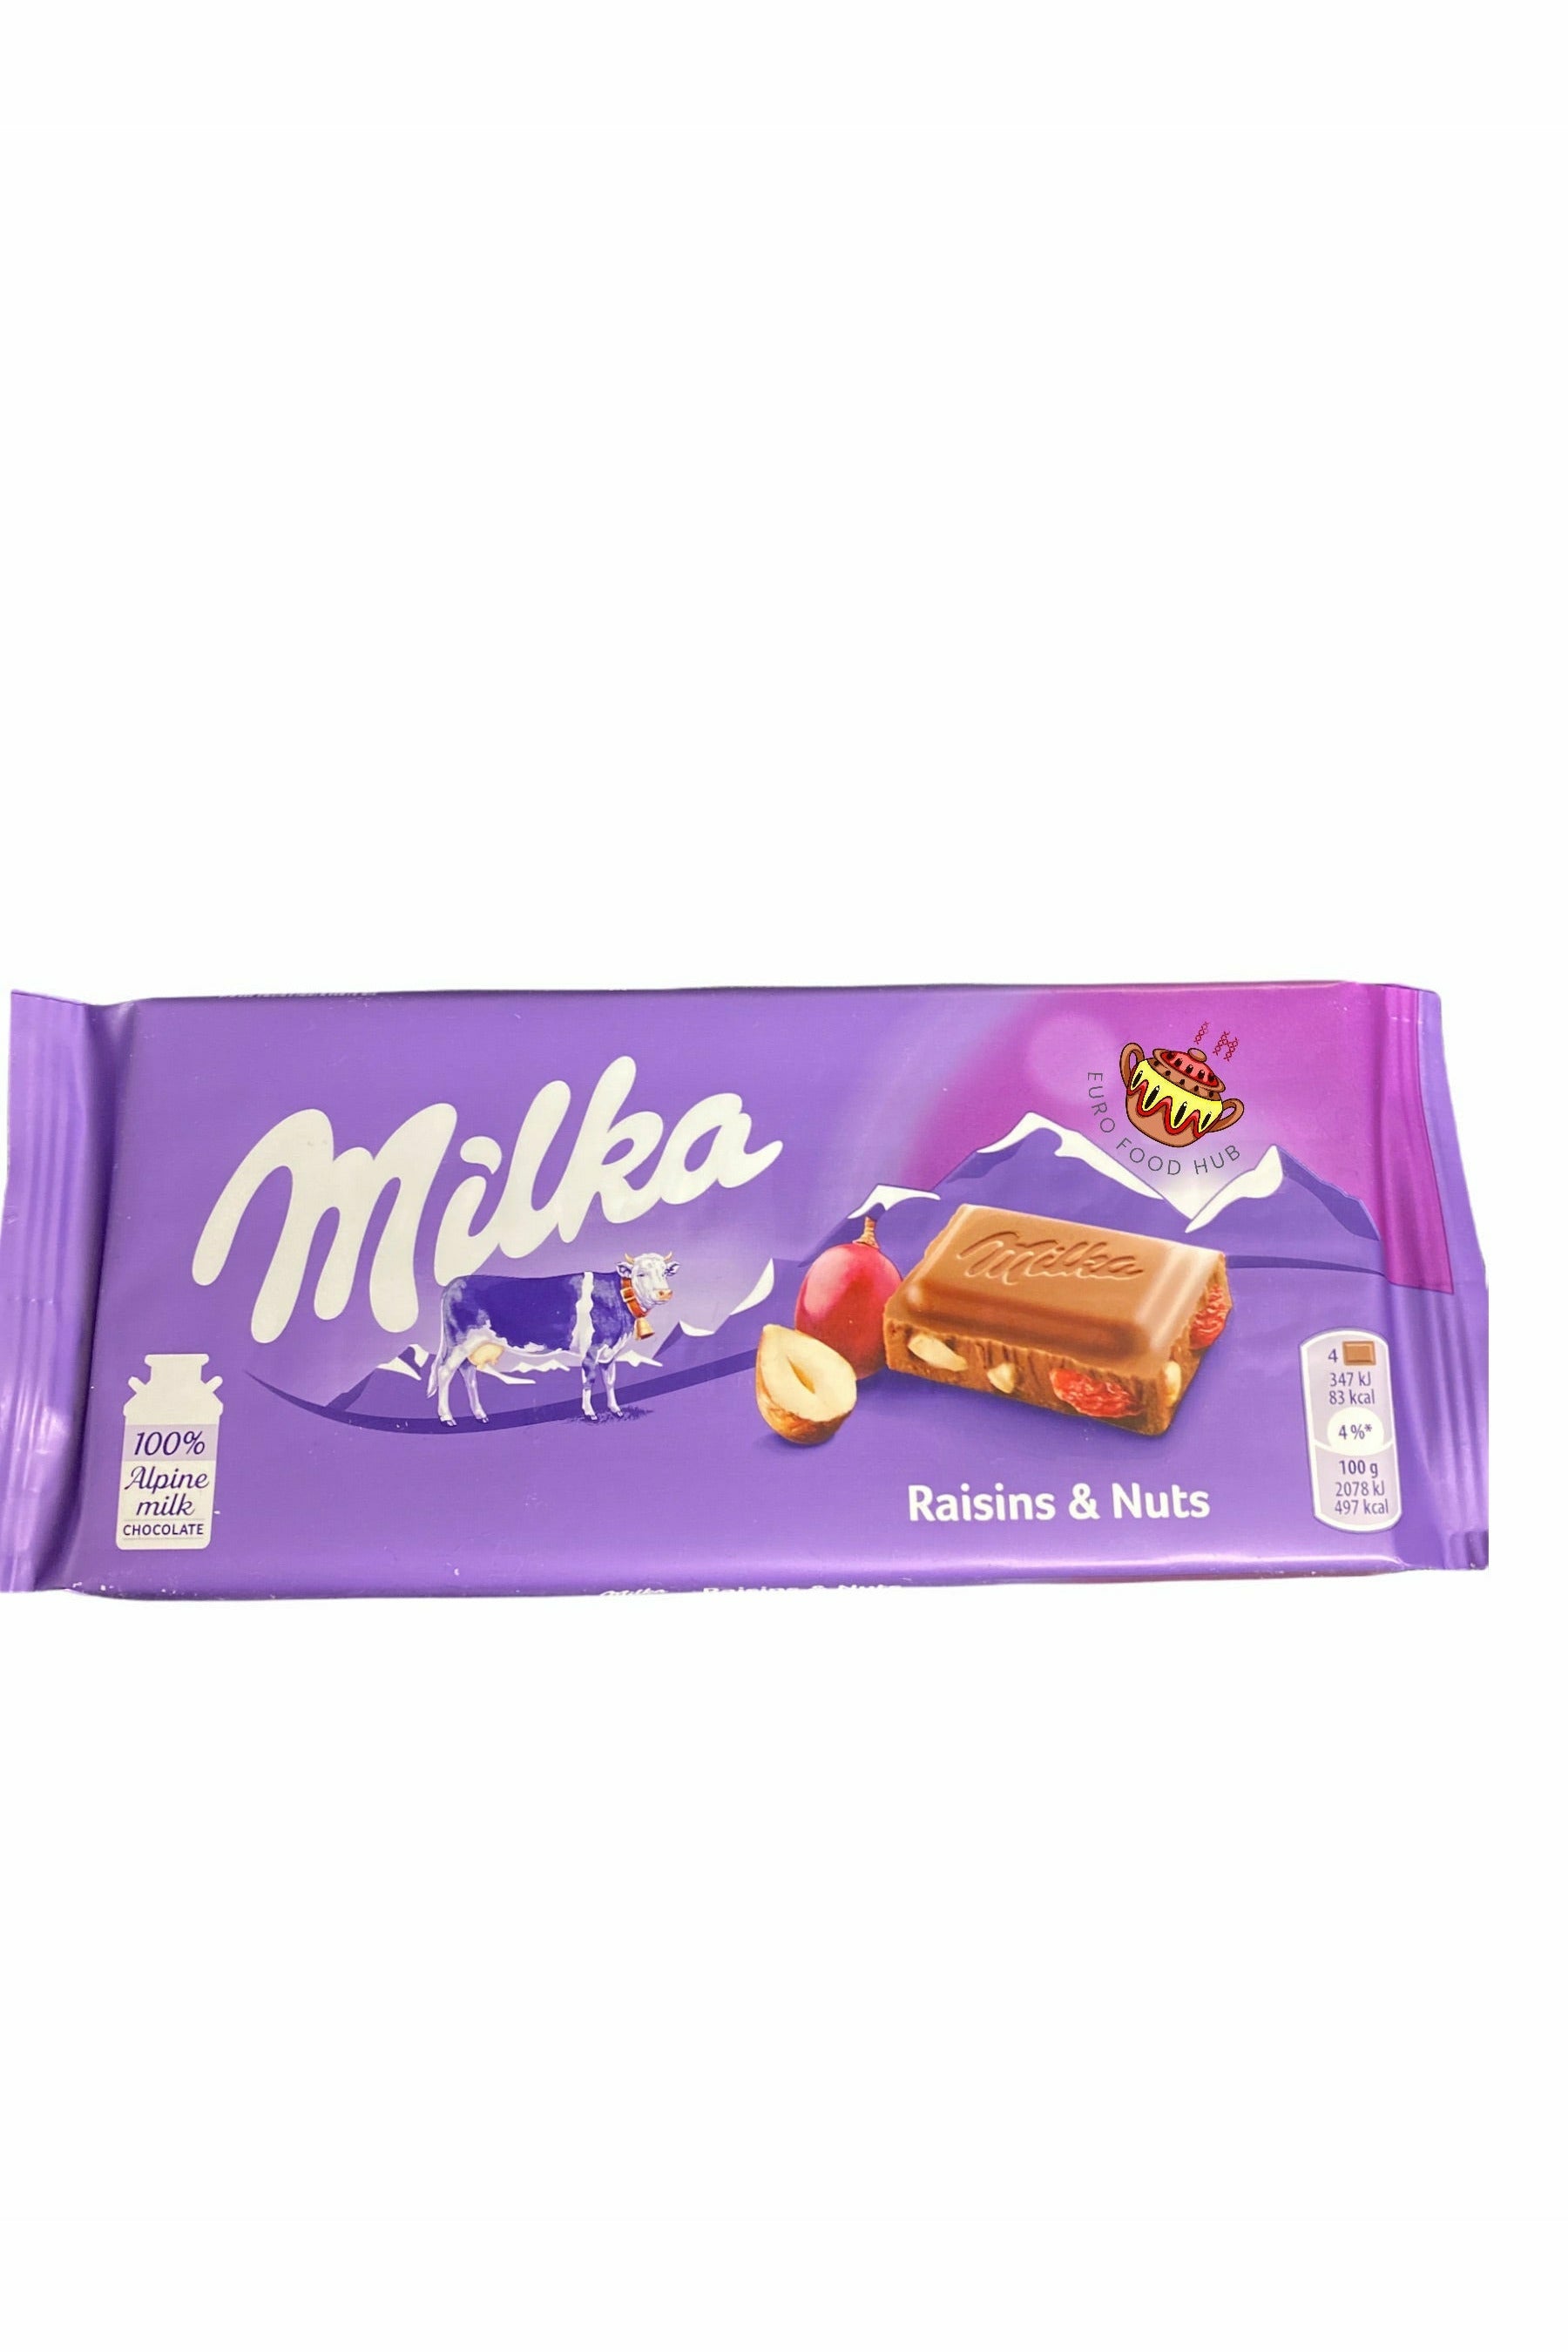 Milka Chocolate - Raisins & Nuts